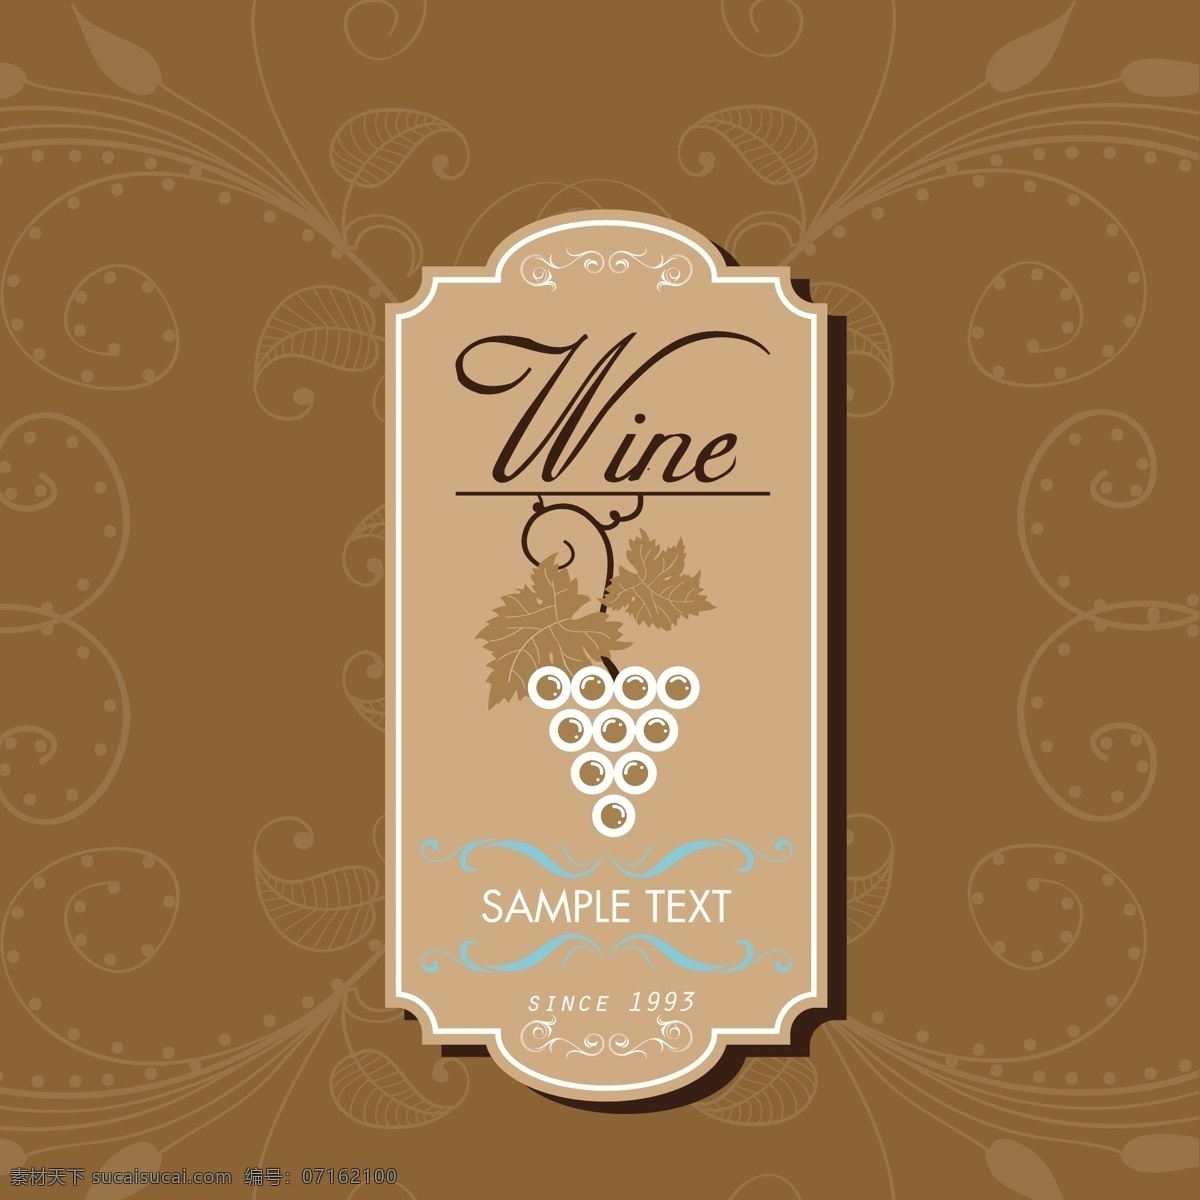 葡萄酒 标签 标签设计 葡萄酒标签 葡萄 复古标签 酒庄标签